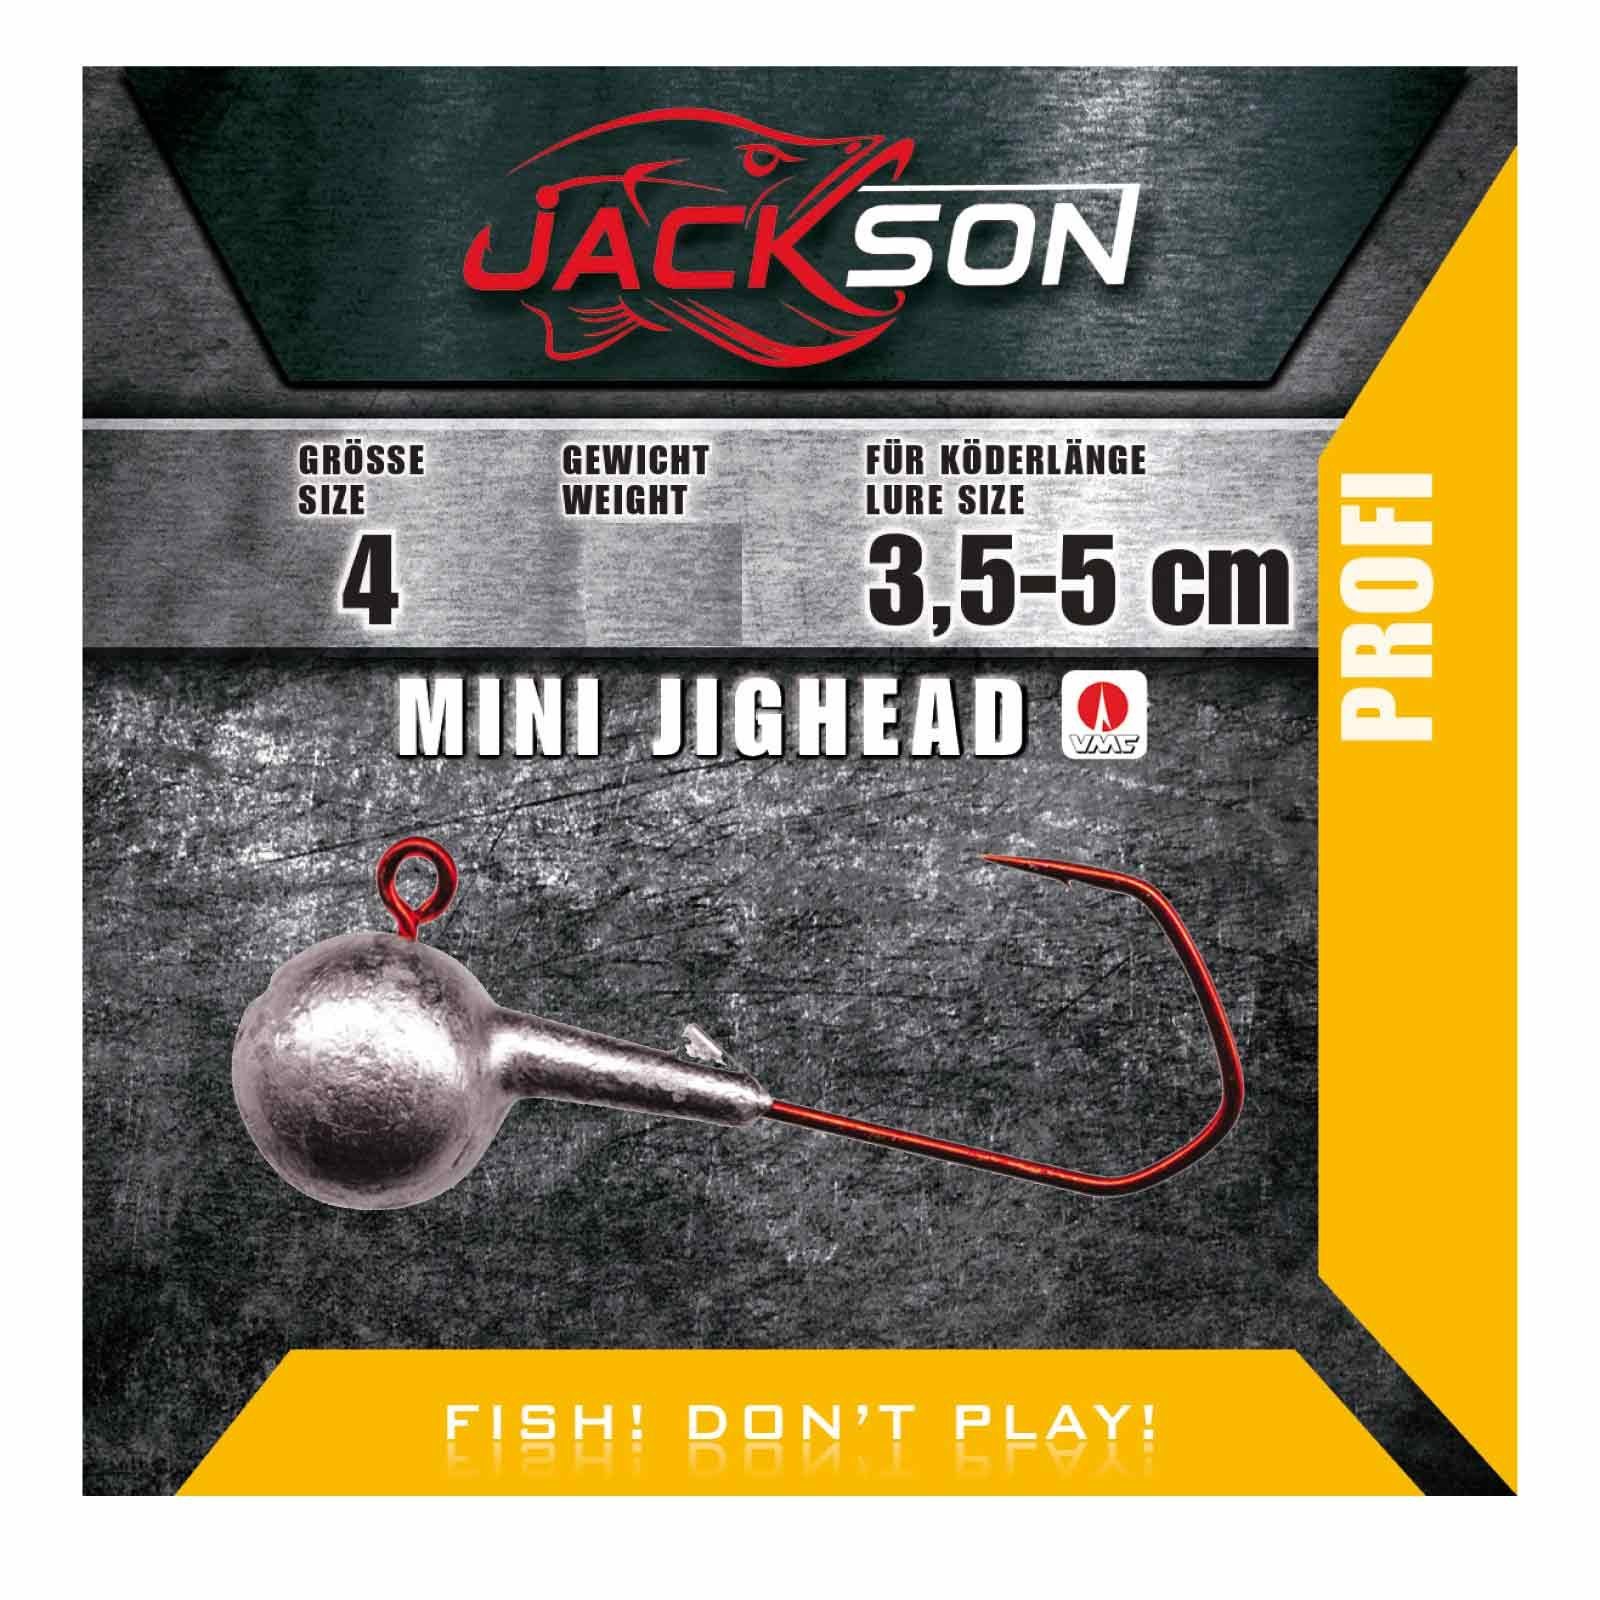 Jackson Fishing Jighaken, Jackson VMC Mini Jighead Größe 4 5g 5 Stk. Jigkopf Jighaken